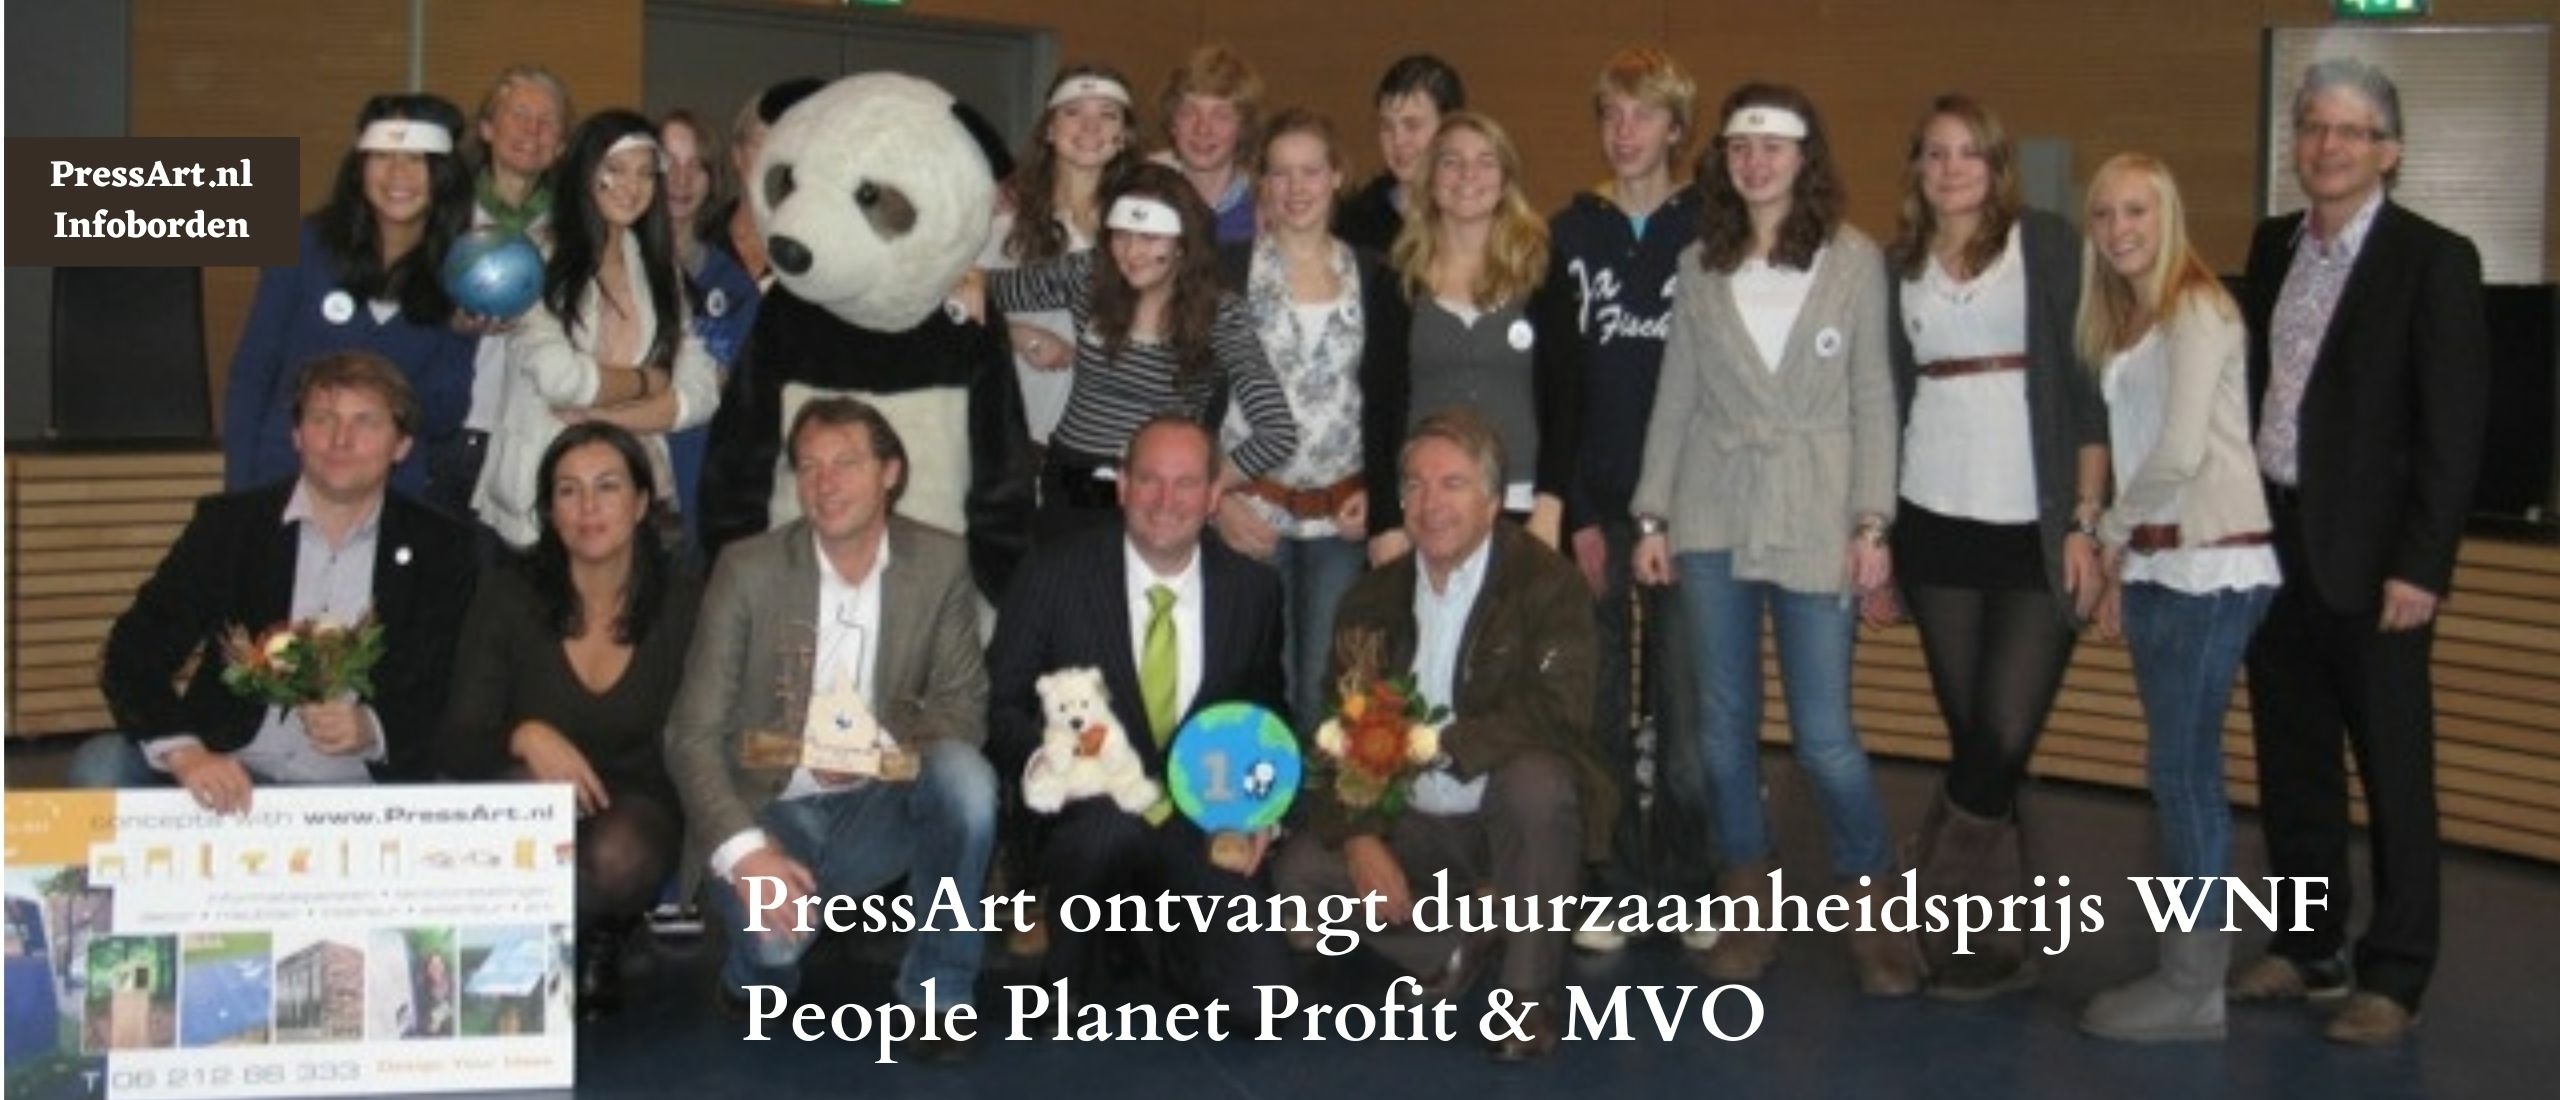 PressArt ontvangt duurzaamheidsprijs WNF People Planet Profit MVO.jpg